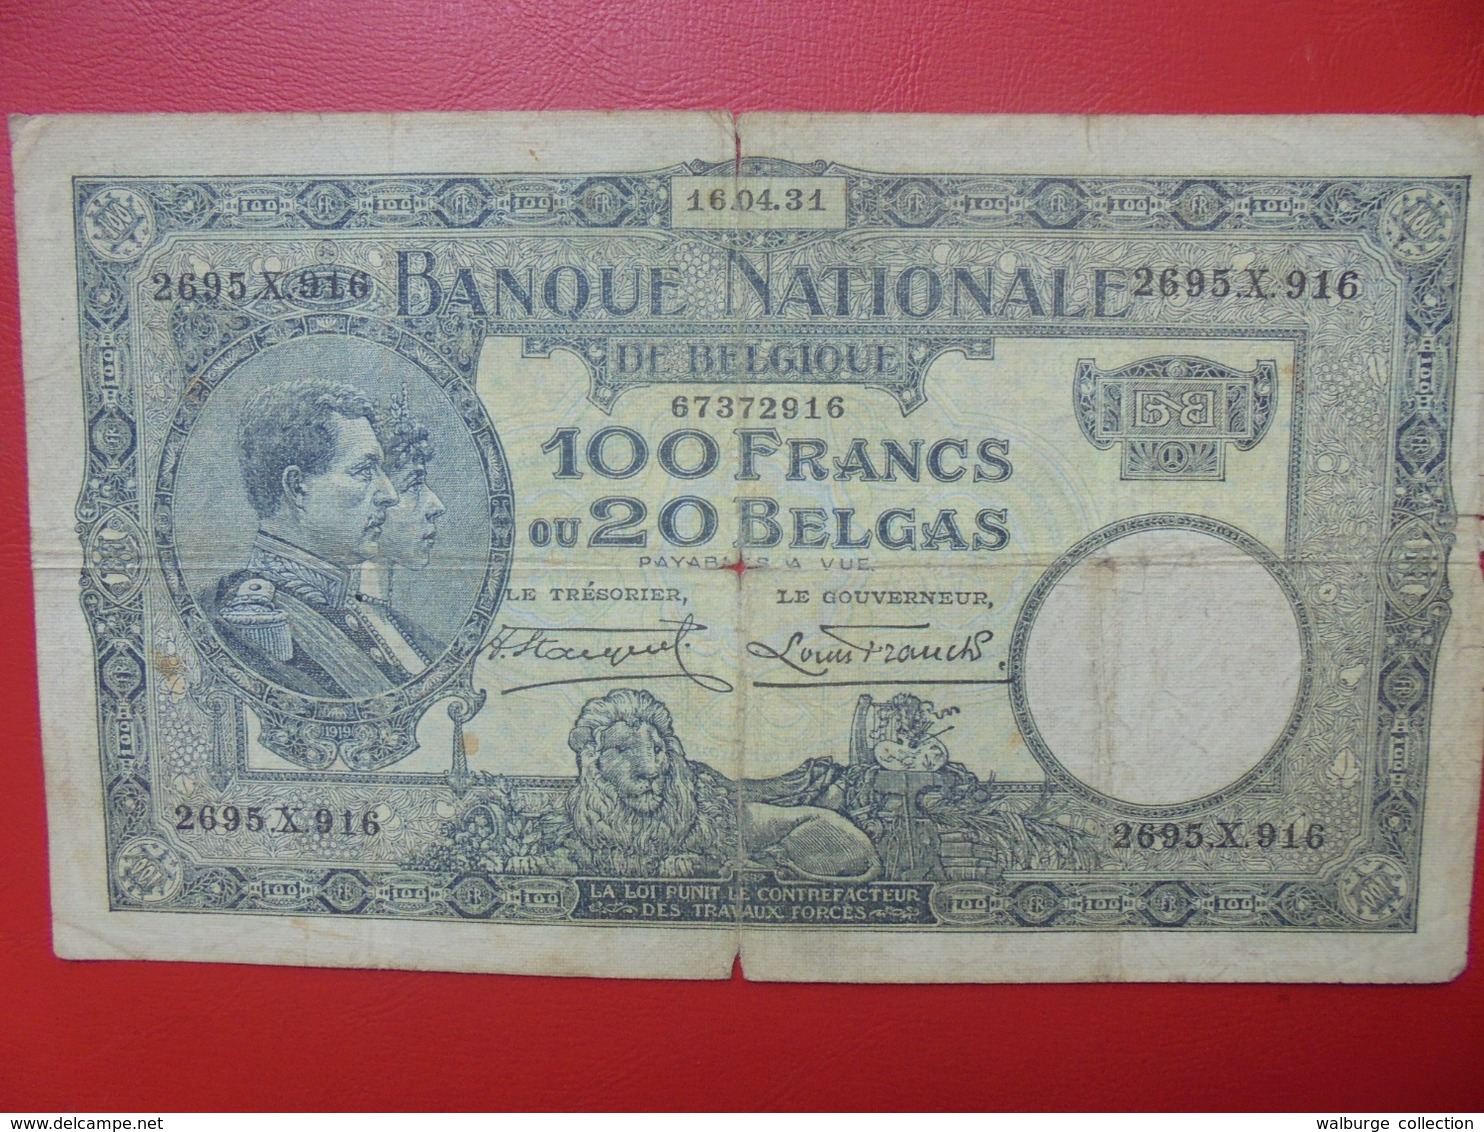 BELGIQUE 100 FRANCS 1931 CIRCULER (B.7) - 100 Francs & 100 Francs-20 Belgas